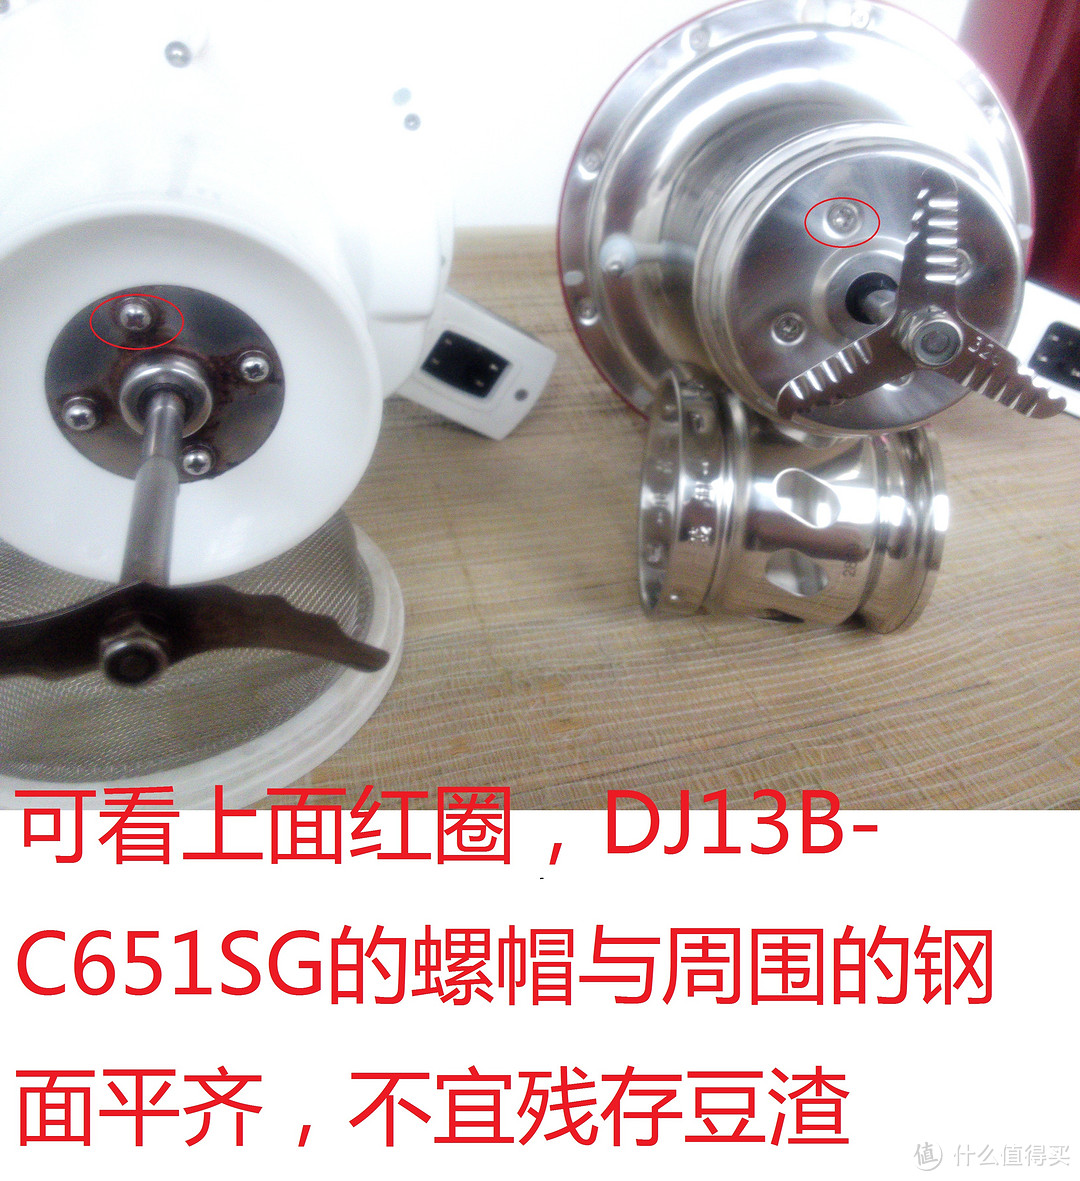 九阳 DJ13B-C651SG全钢破壁免滤豆浆机